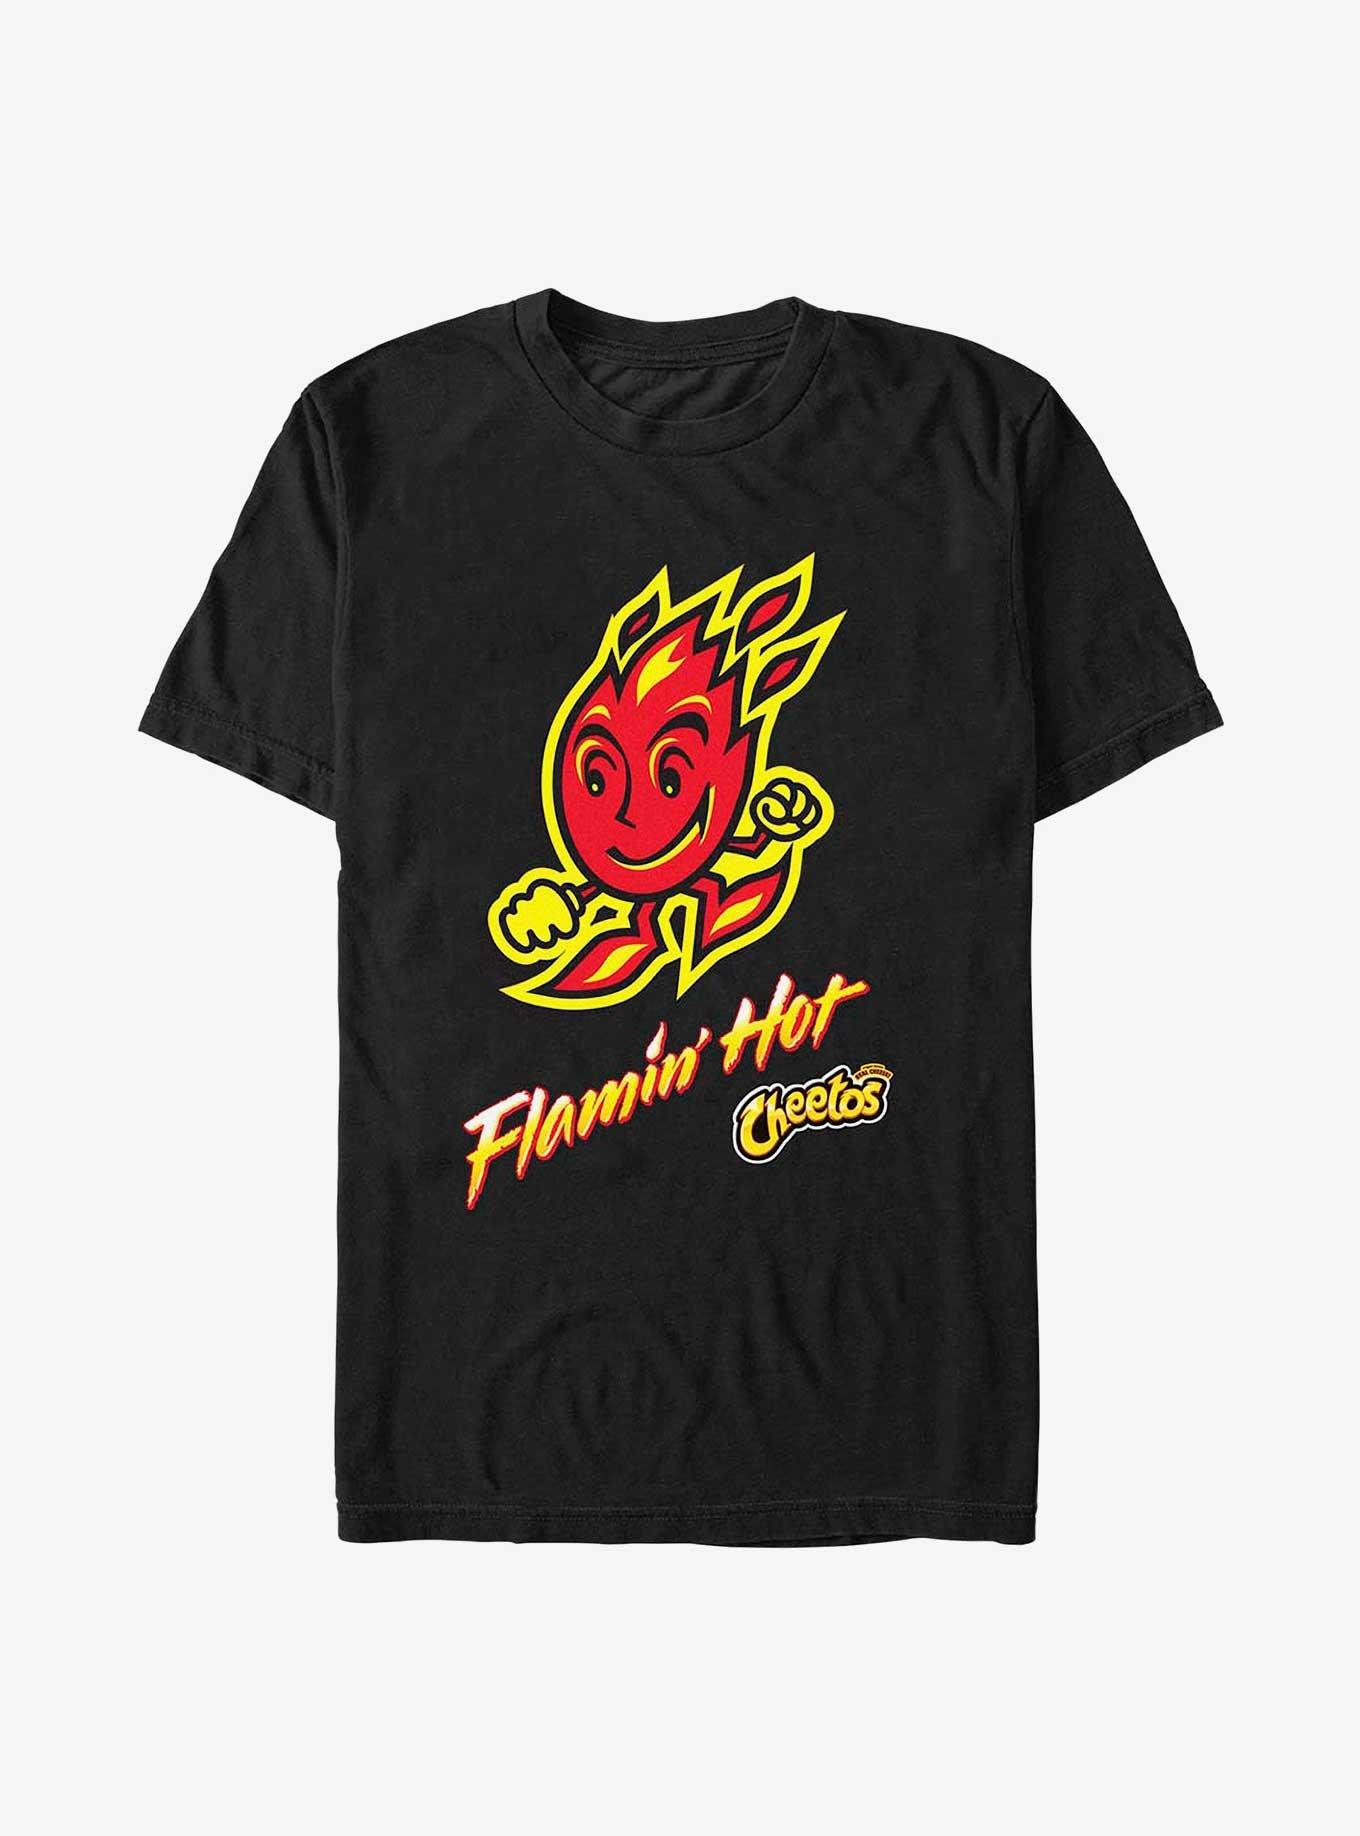 Cheetos Flamin' Hot Doodle T-Shirt